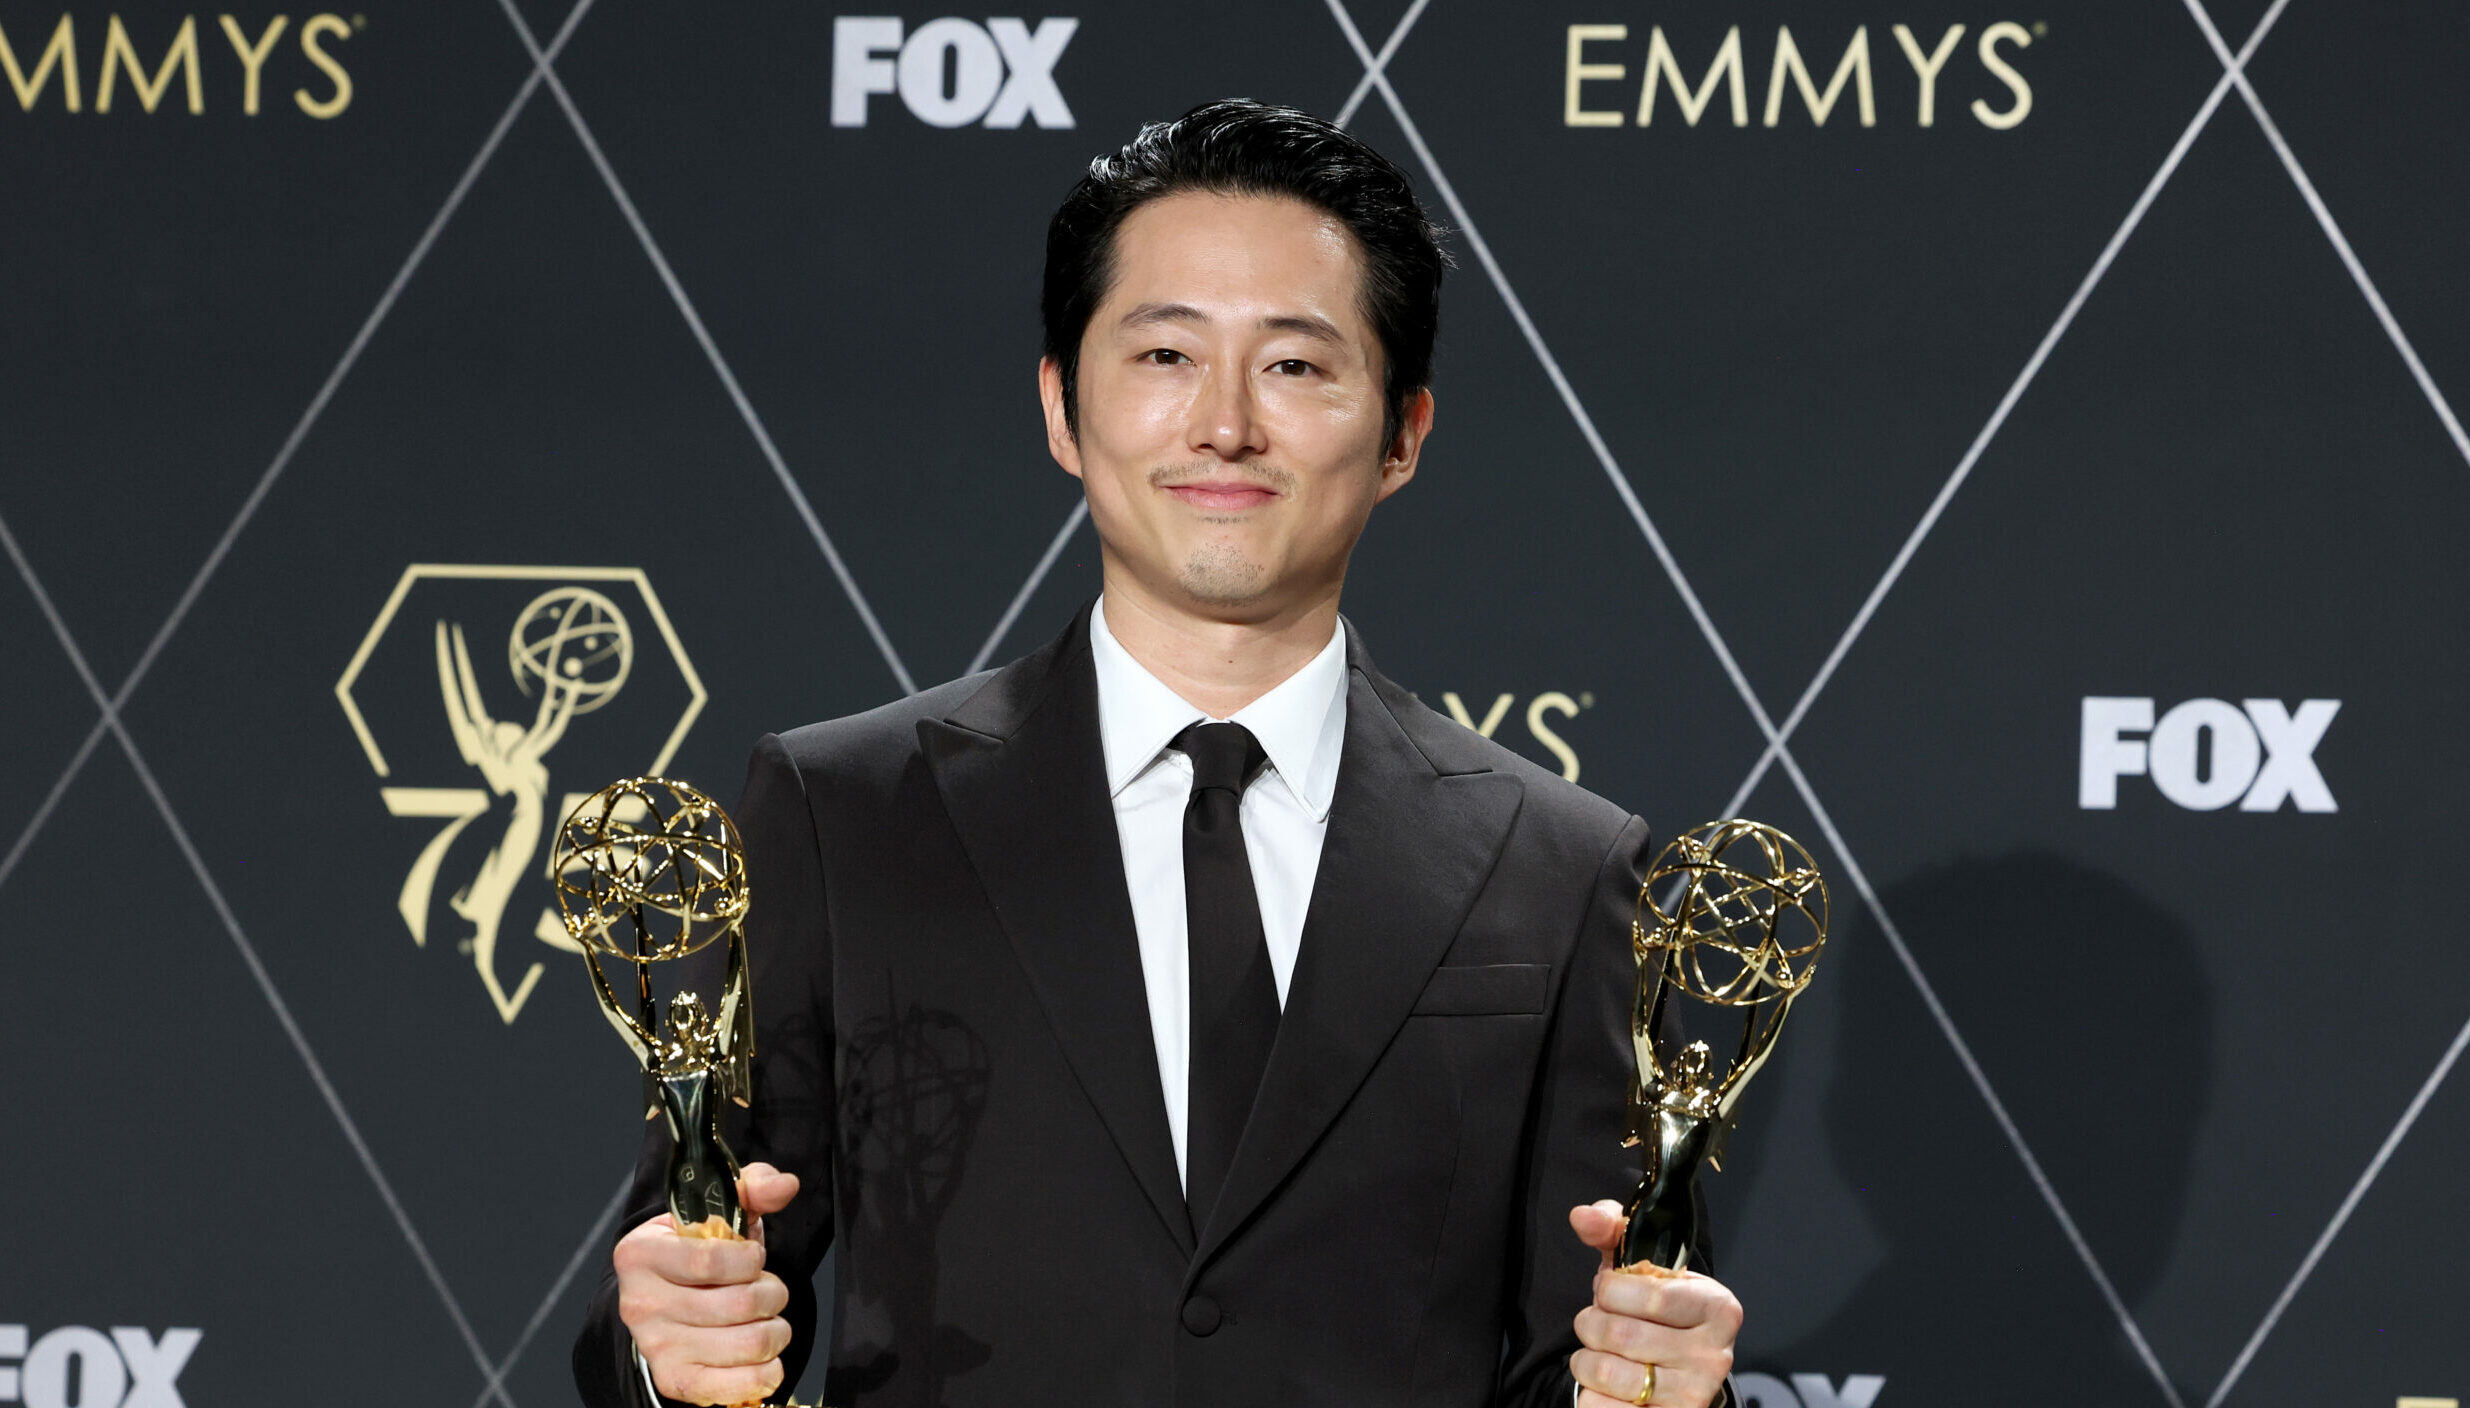 Steven Yeun bekam den Emmy für seine darstellerische Leistung in "Beef". Die Mini-Serie gehörte zu den Gewinnern des Abends